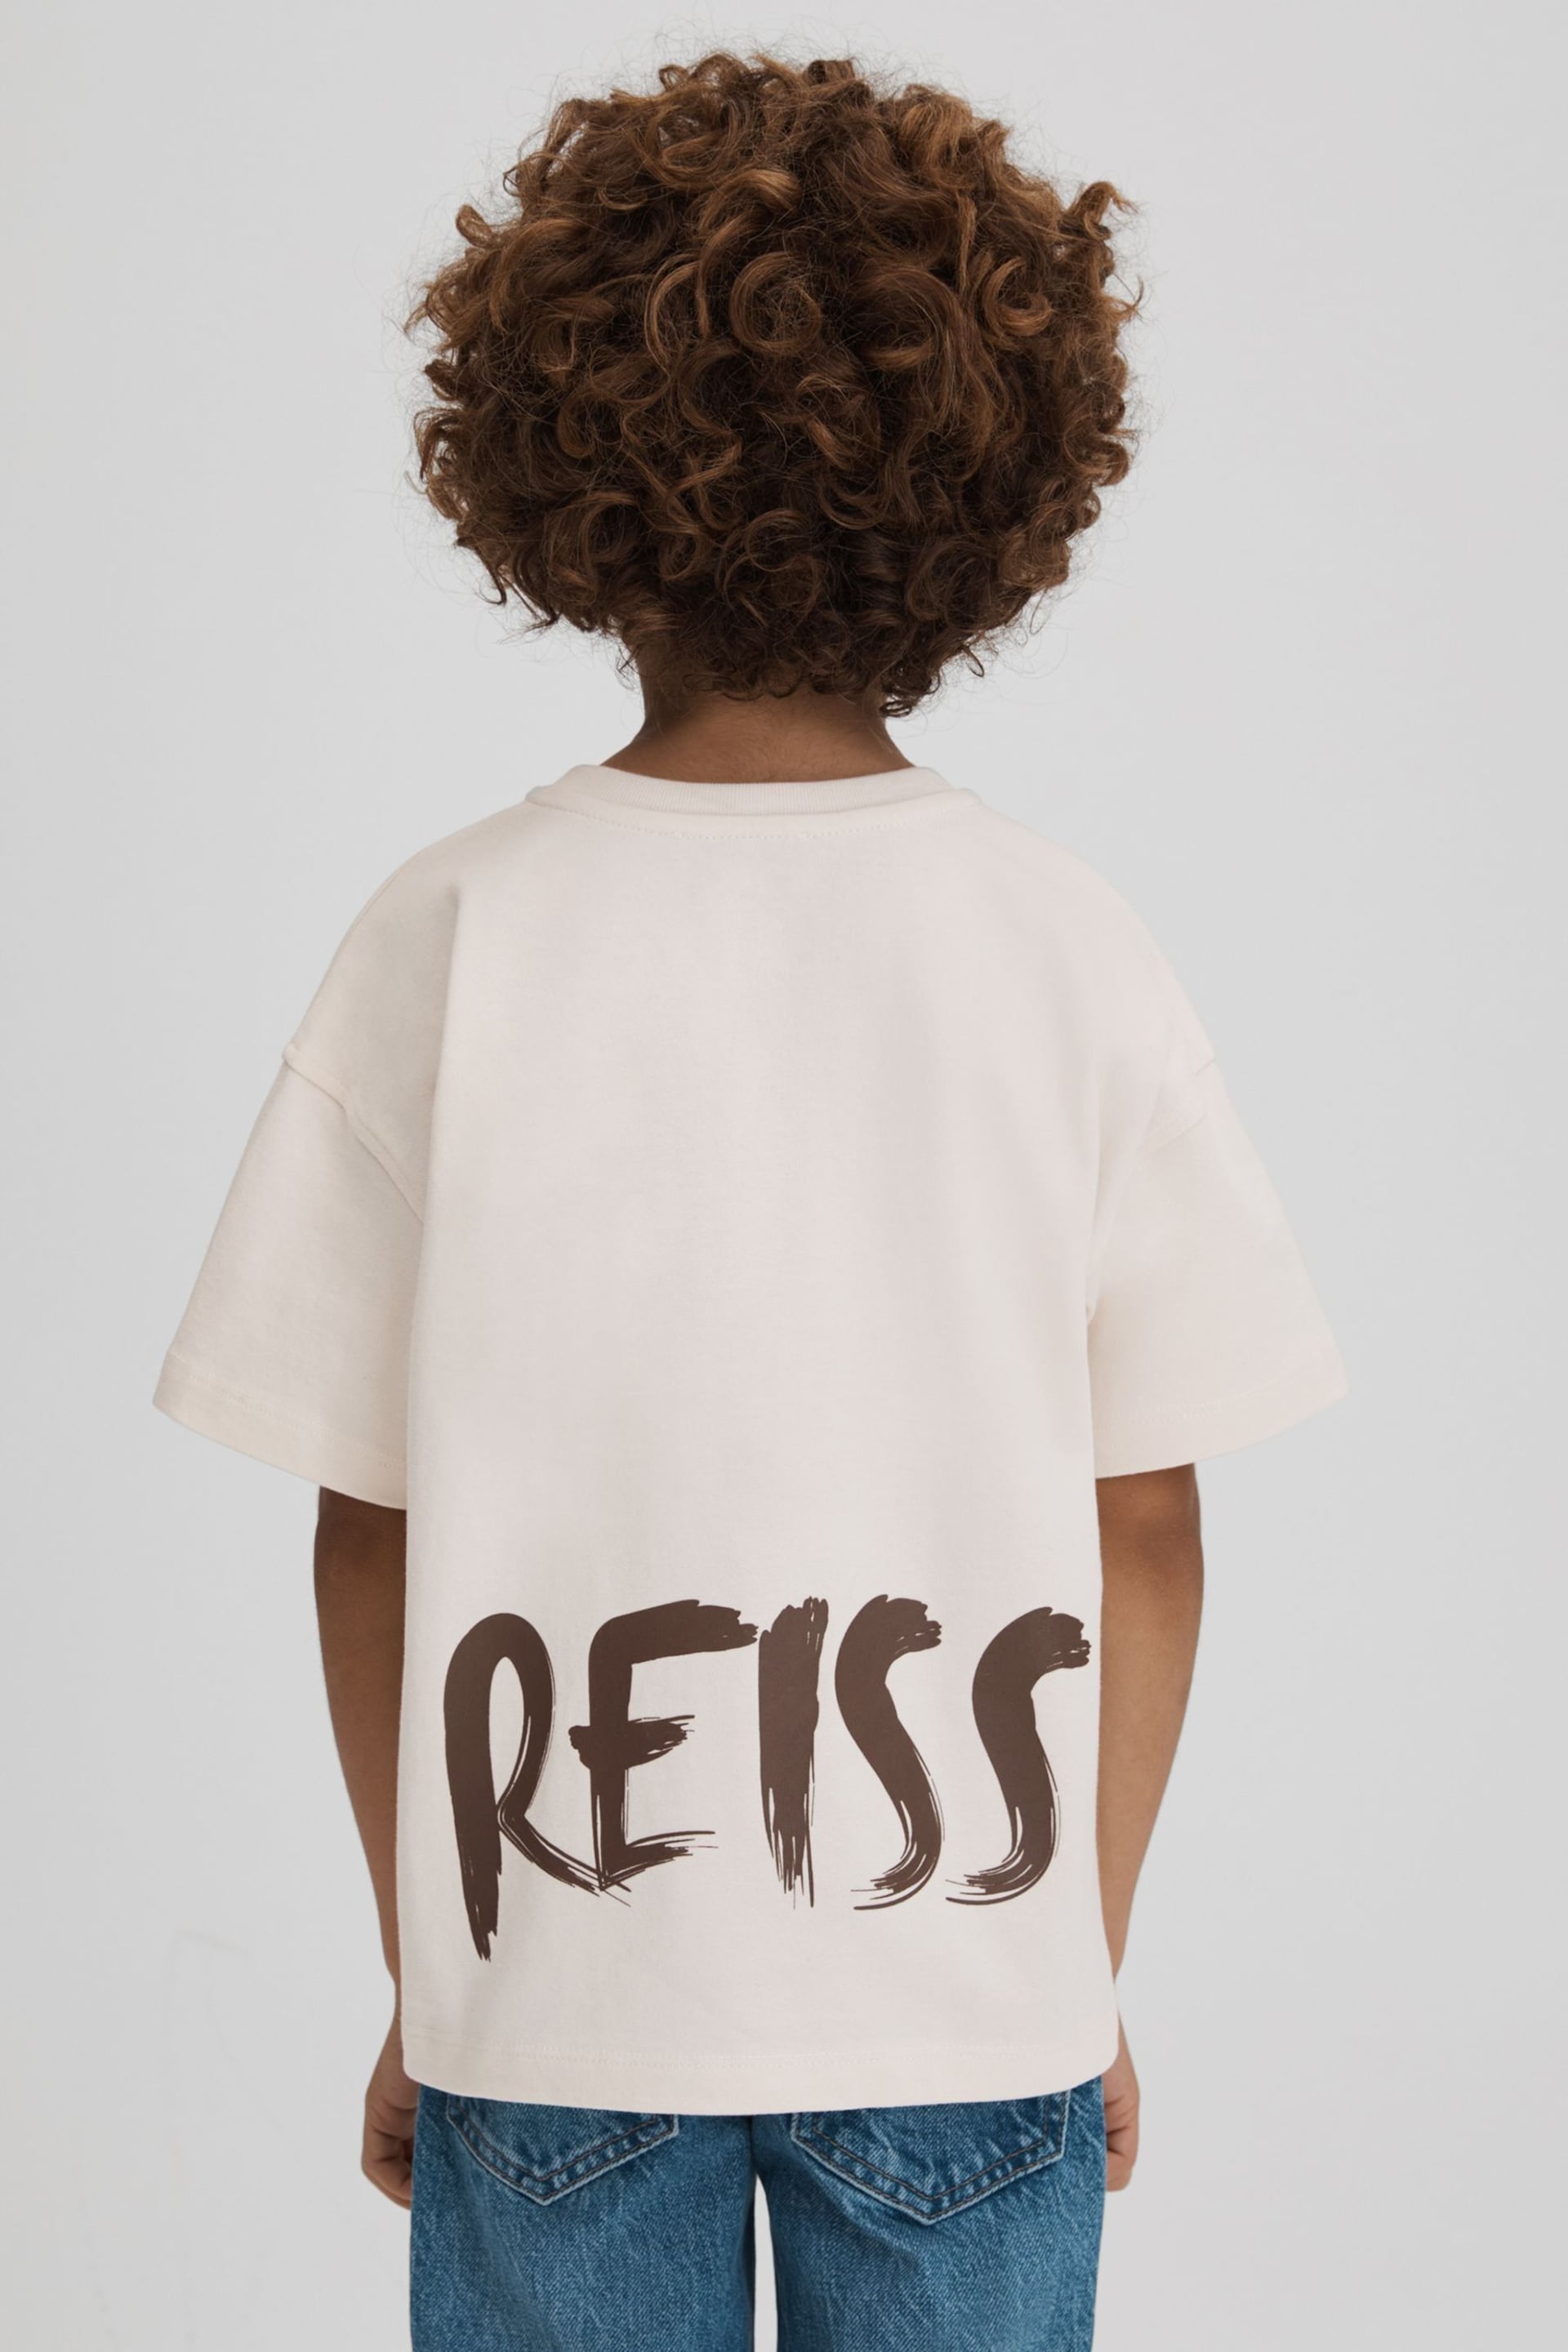 Reiss Ecru Abbott Teen Cotton Motif T-Shirt - Image 5 of 6